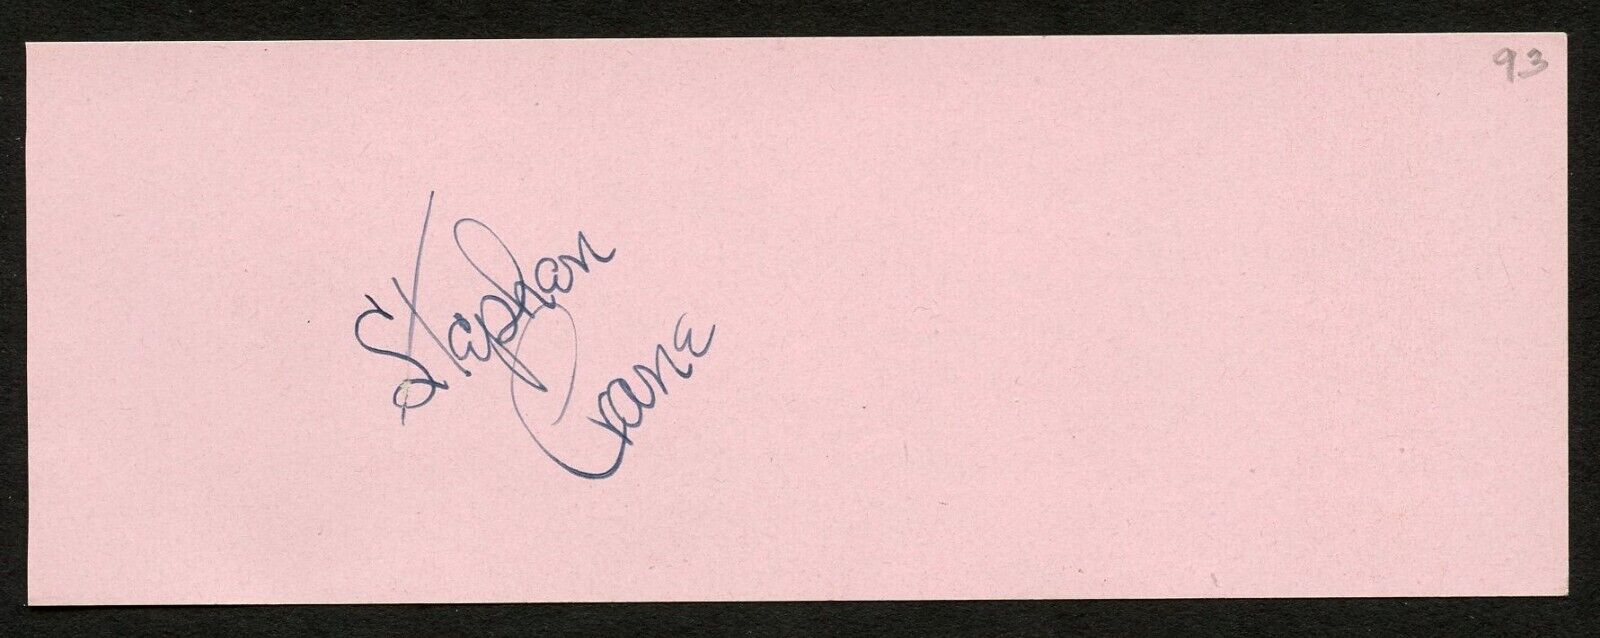 Stephen Crane d1985 signed autograph auto 2x5 cut Actor and Restaurateur